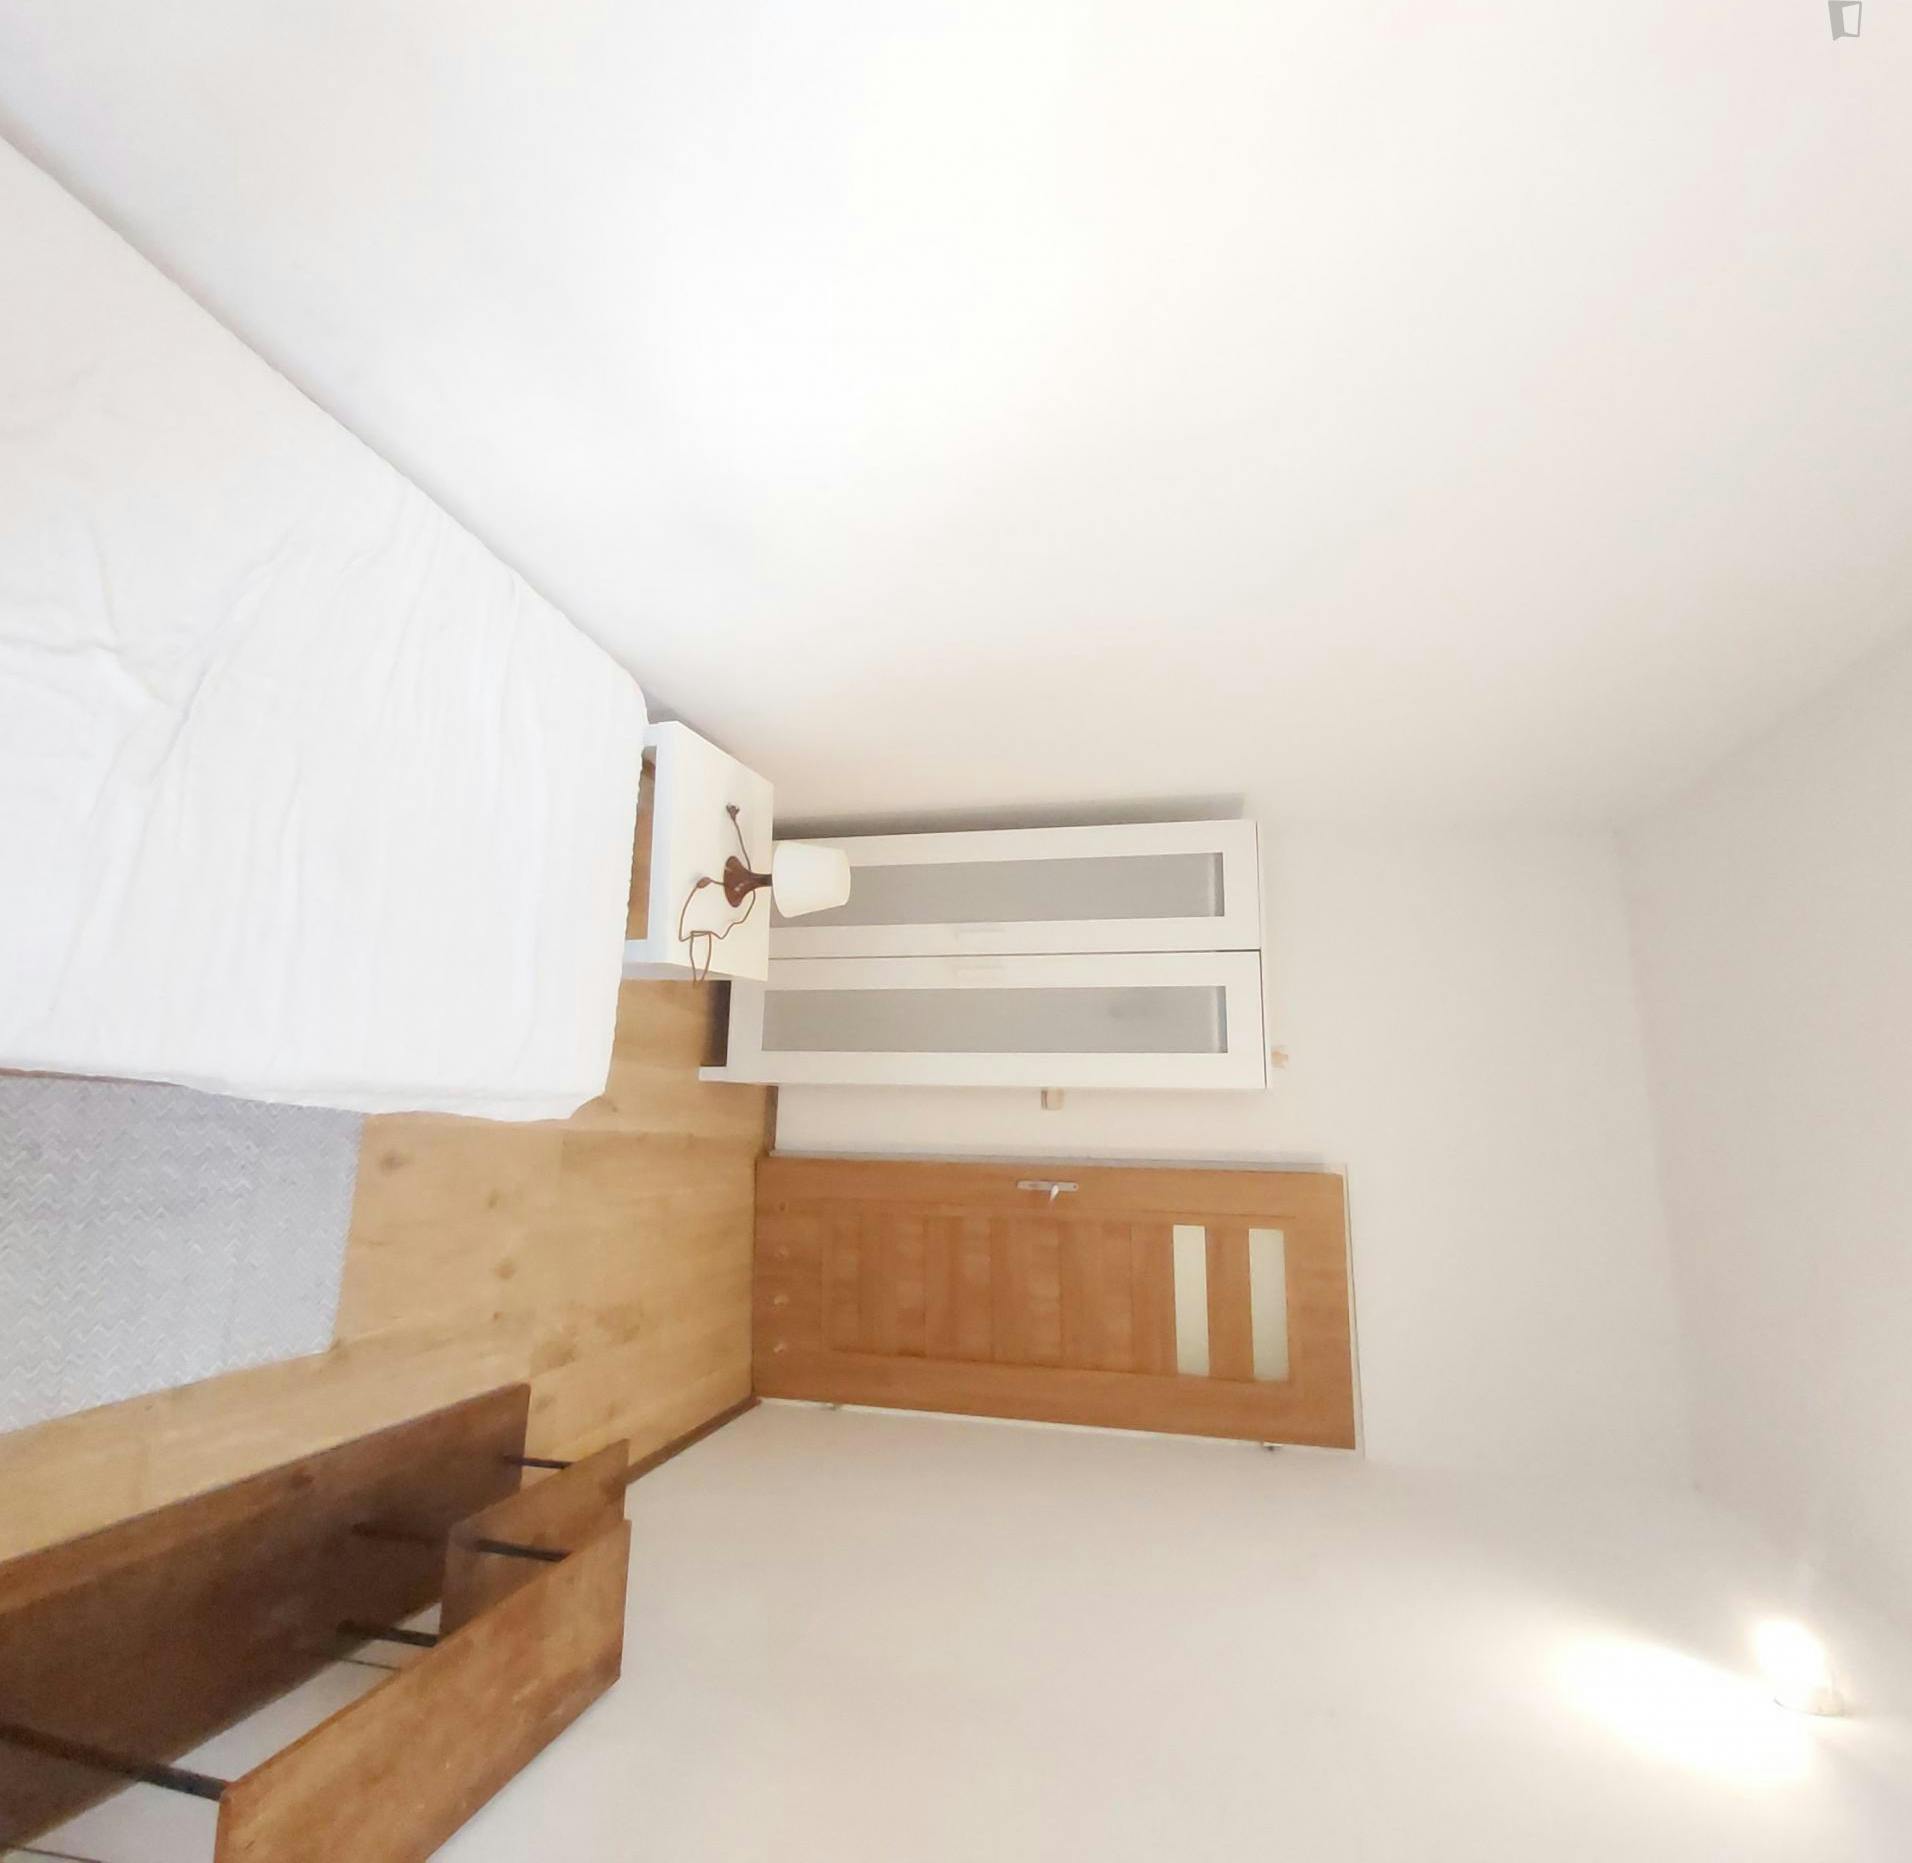 Comfortable single bedroom in Piasek Południe